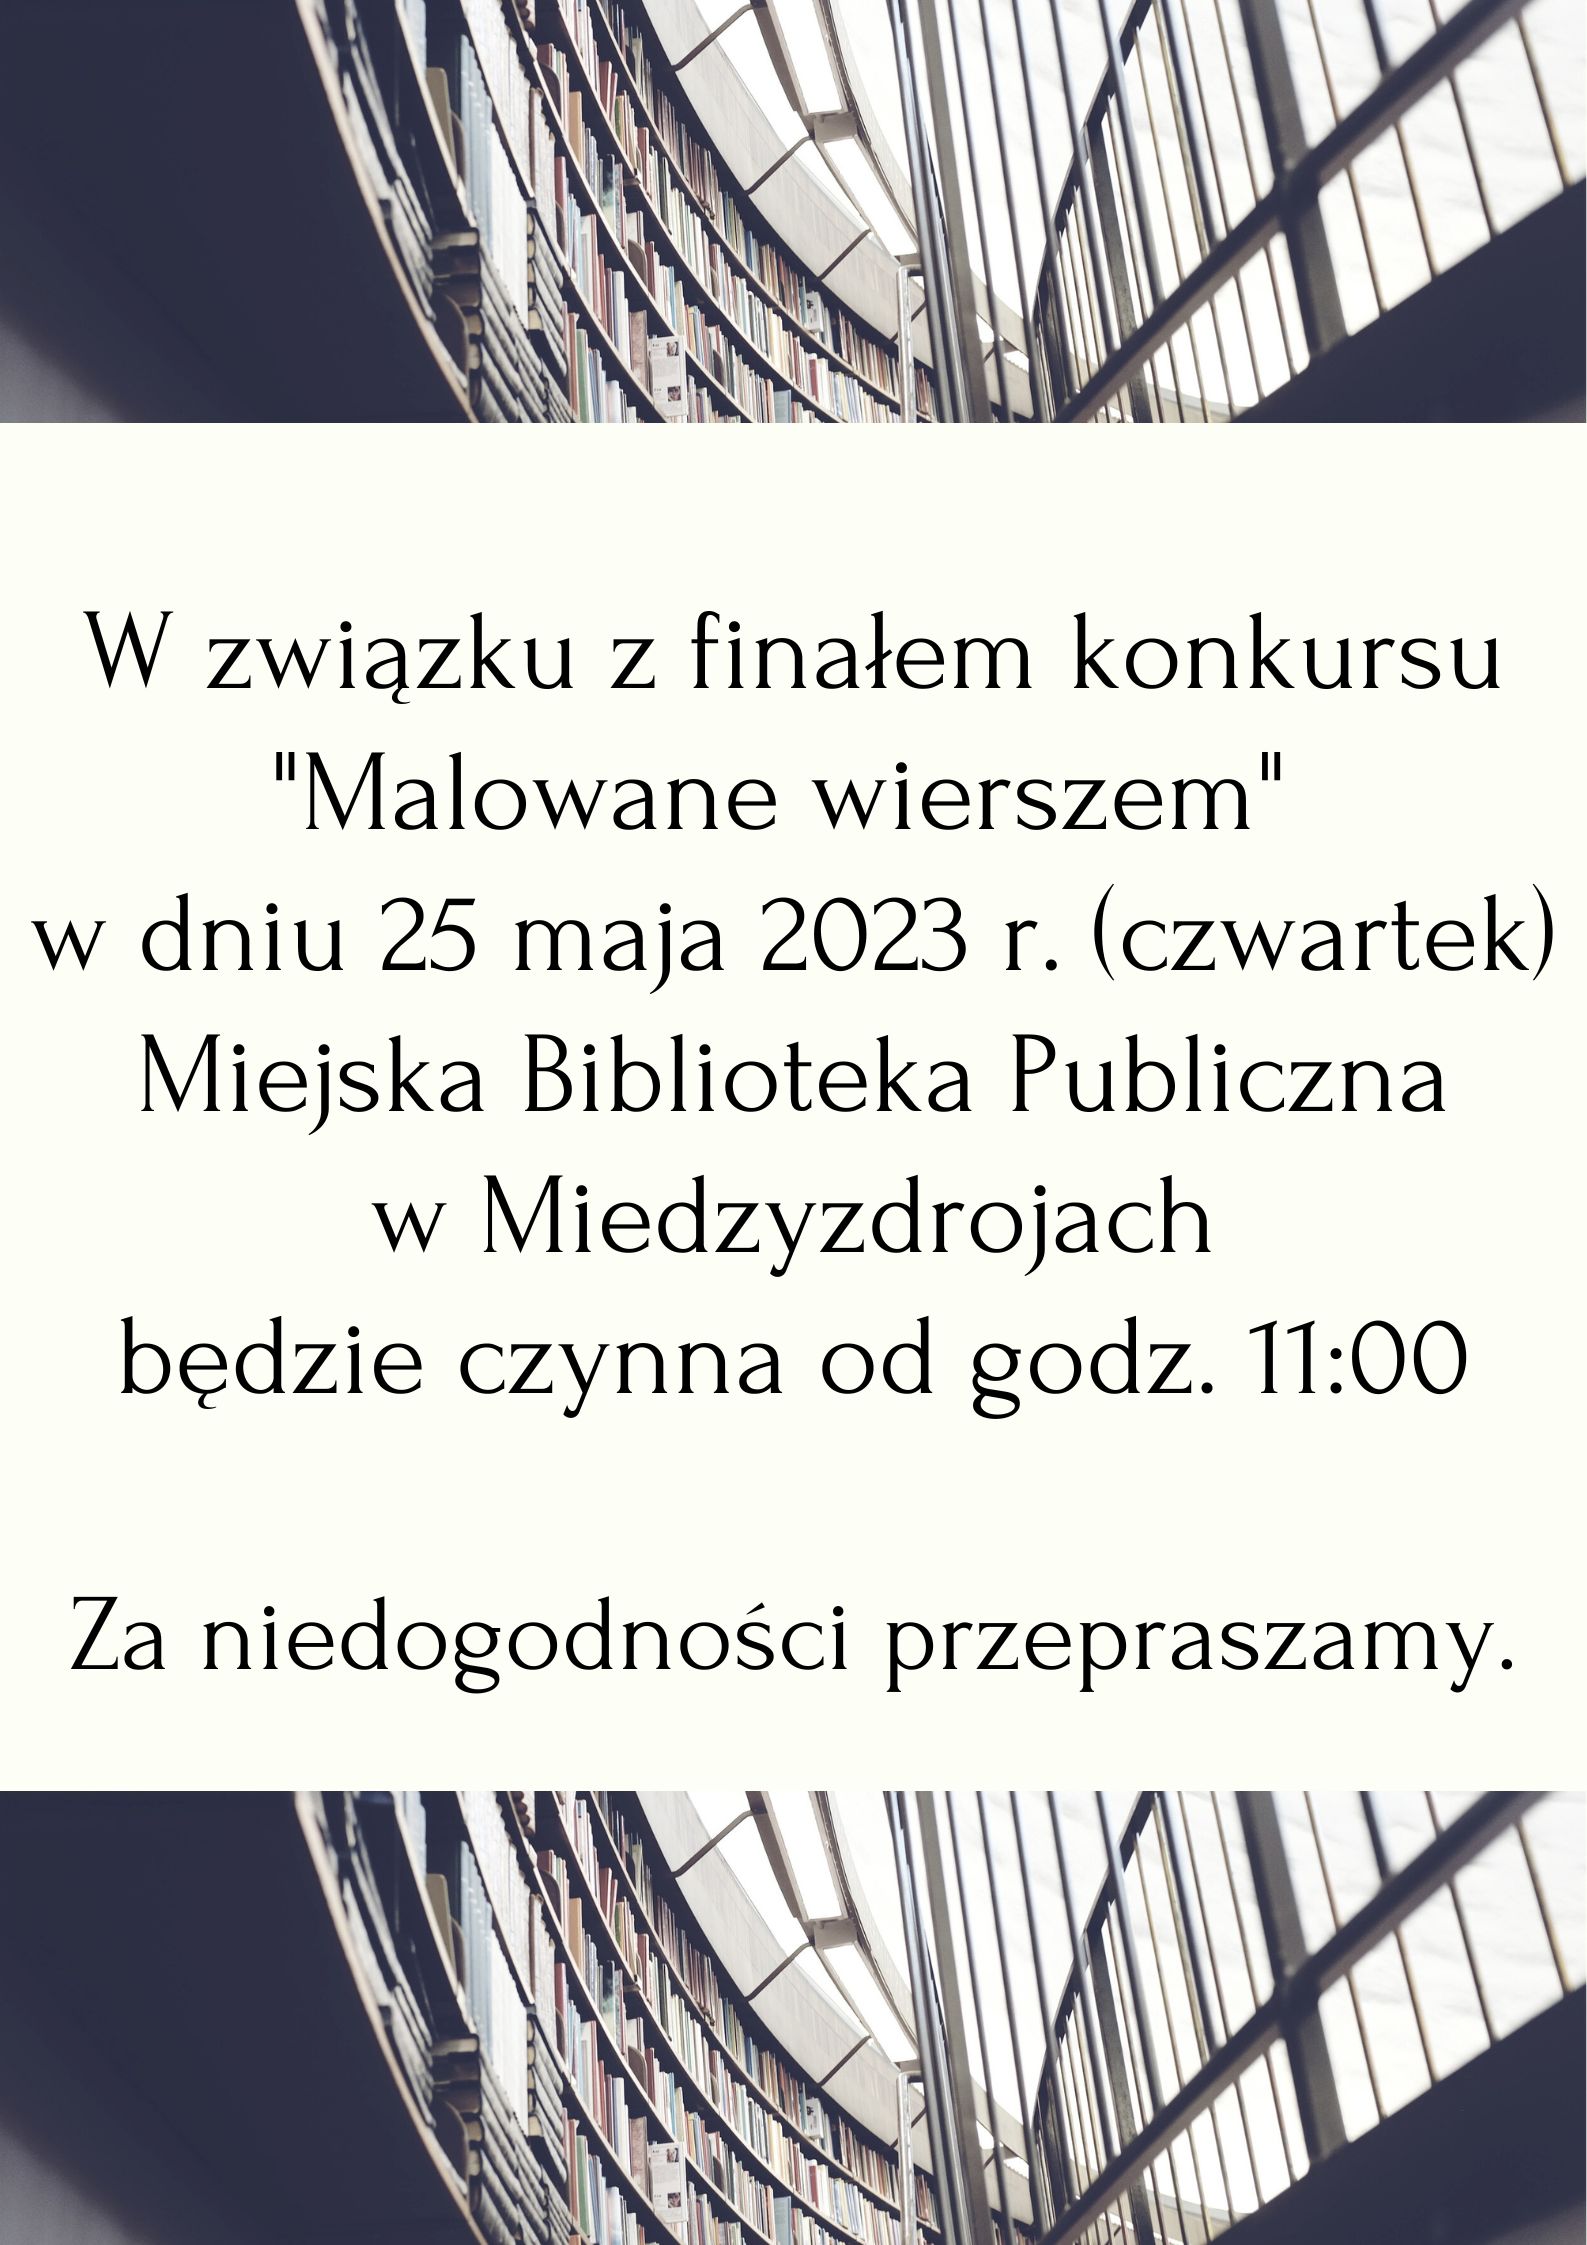 Godziny otwarcia biblioteki 25 maja 2023r.